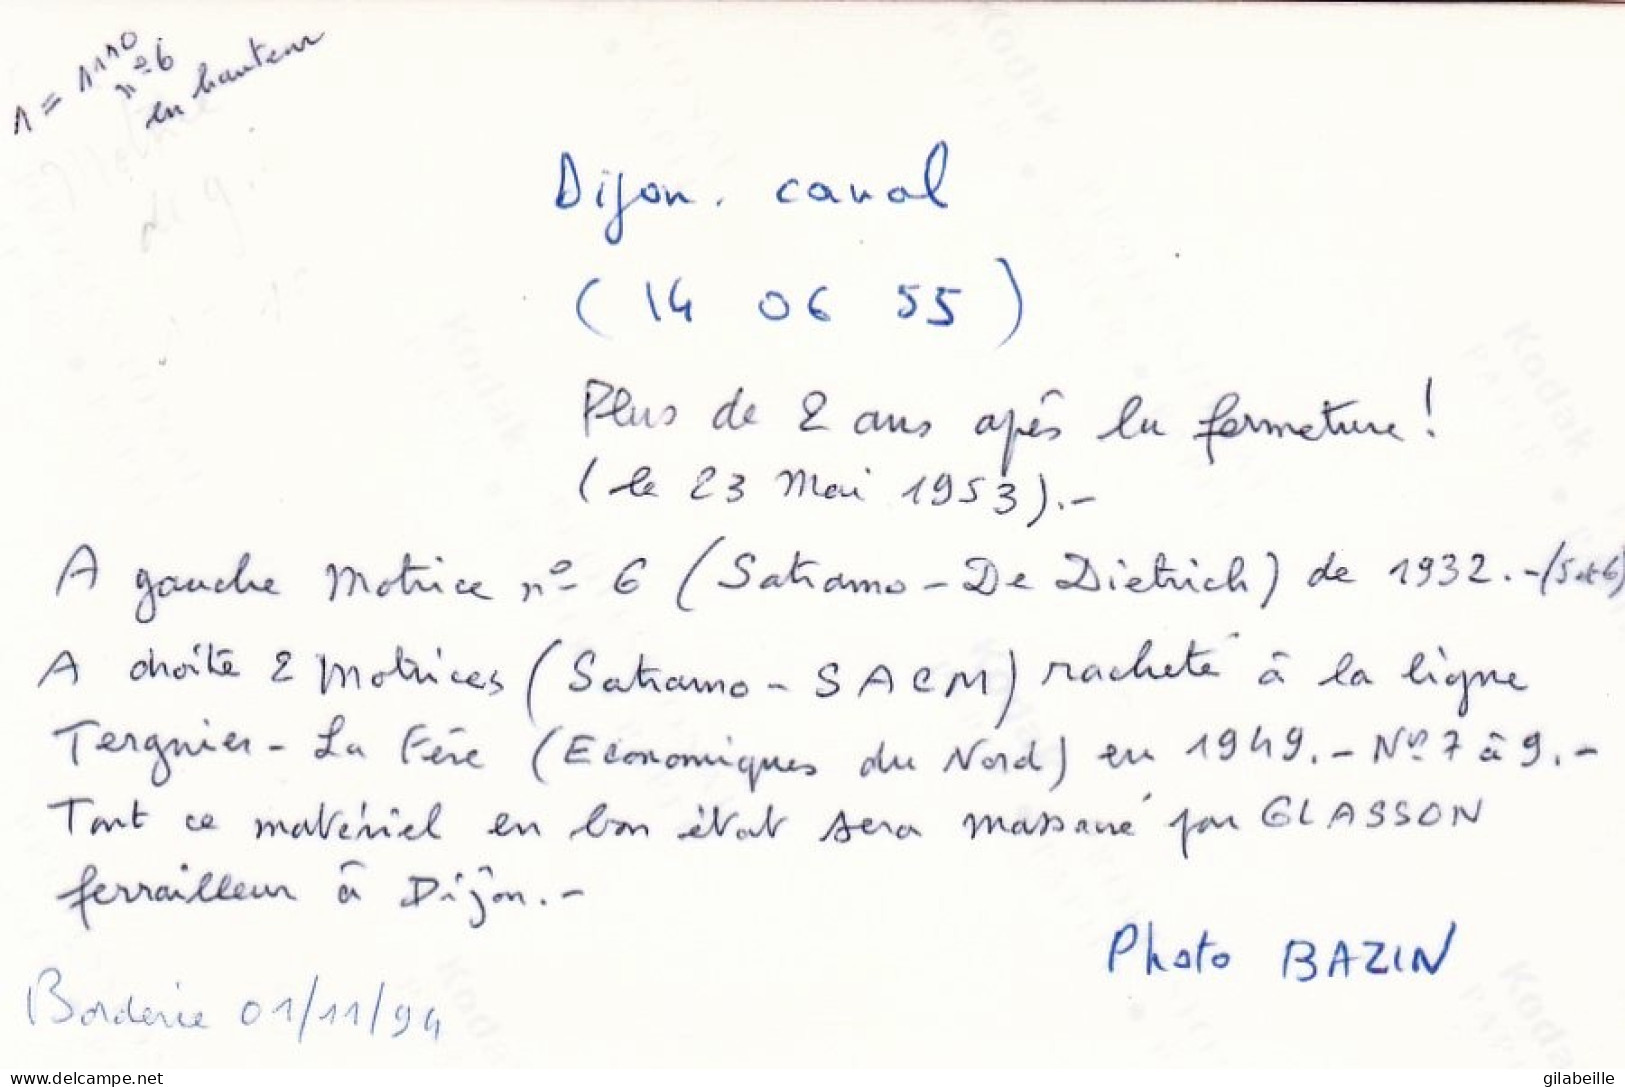 Photo - DIJON CANAL - Mai 1953 - Depot Plus De 2 Ans Apres La Fermeture - Retirage - Ohne Zuordnung